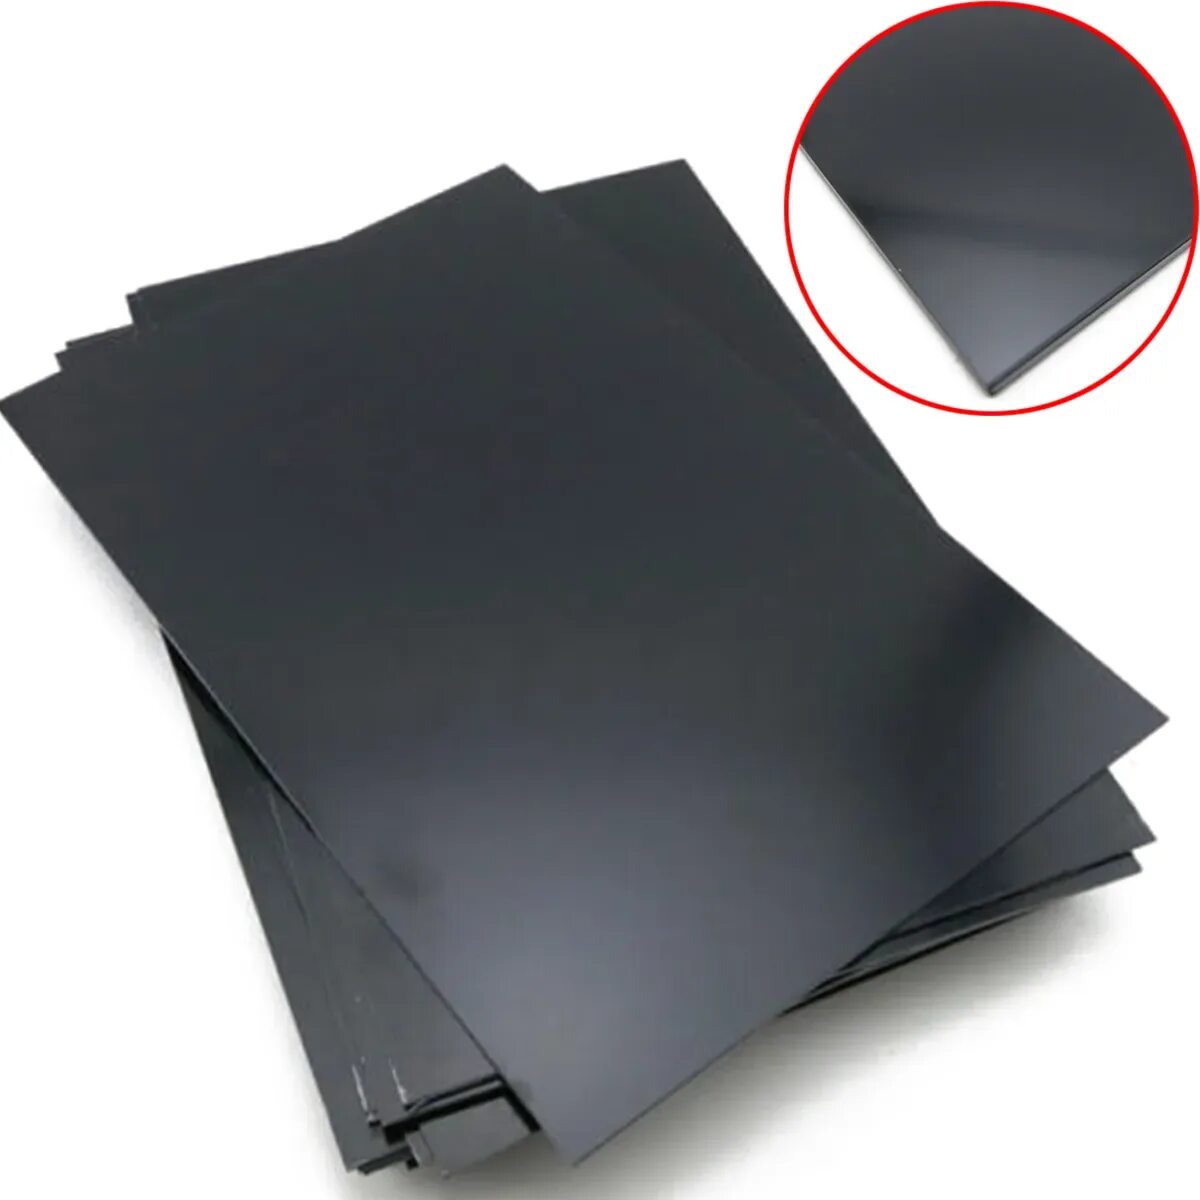 Пластик толщиной 1 мм. АБС пластик чёрный 1мм 5 мм. Пластик АВС черный листовой 2мм. Листовой пластик черный 4x1500x3000 АБС. АБС пластик 0.5 мм листовой.